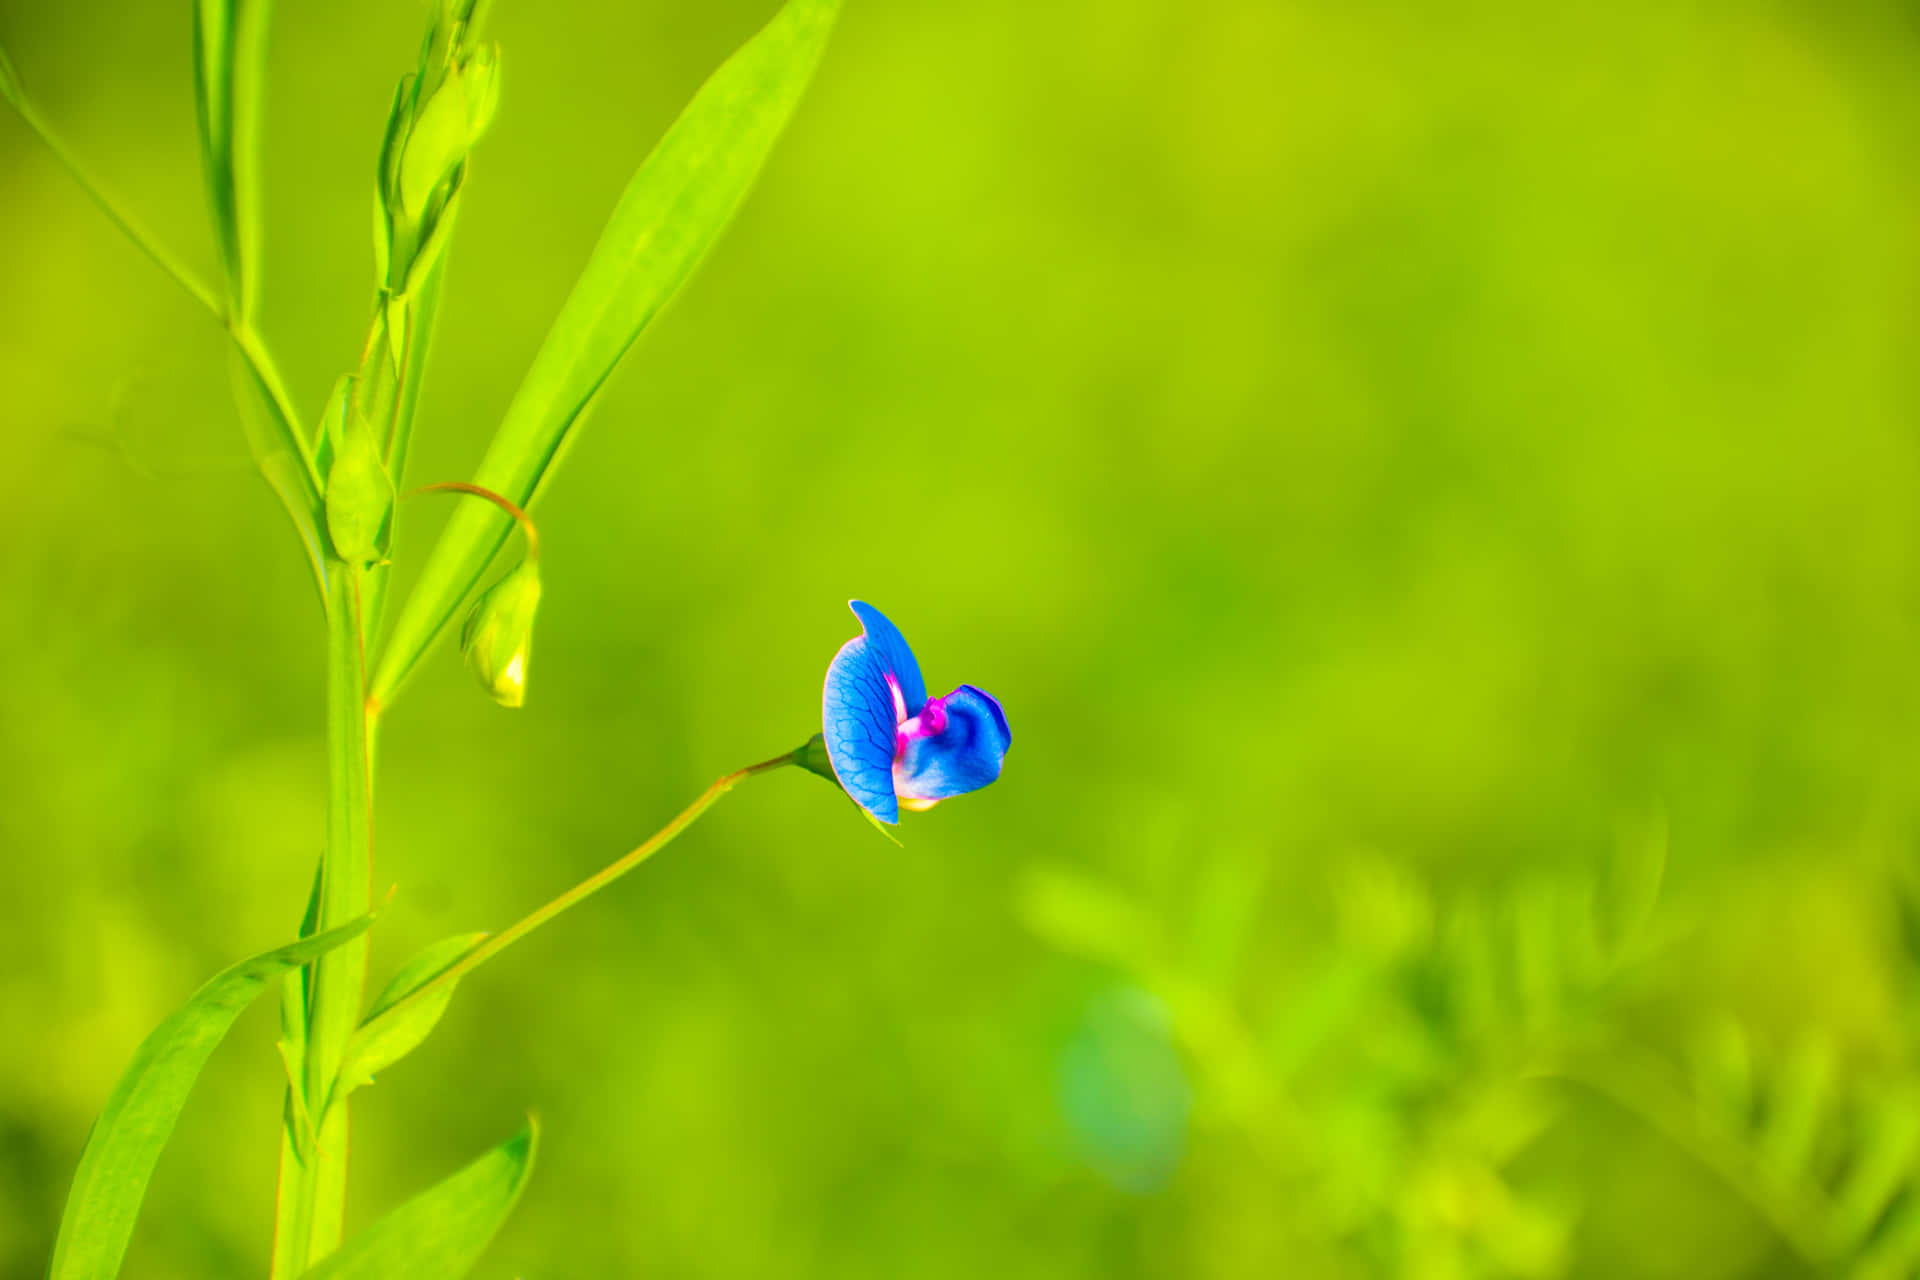 A Blue Flower Is Growing In A Green Field